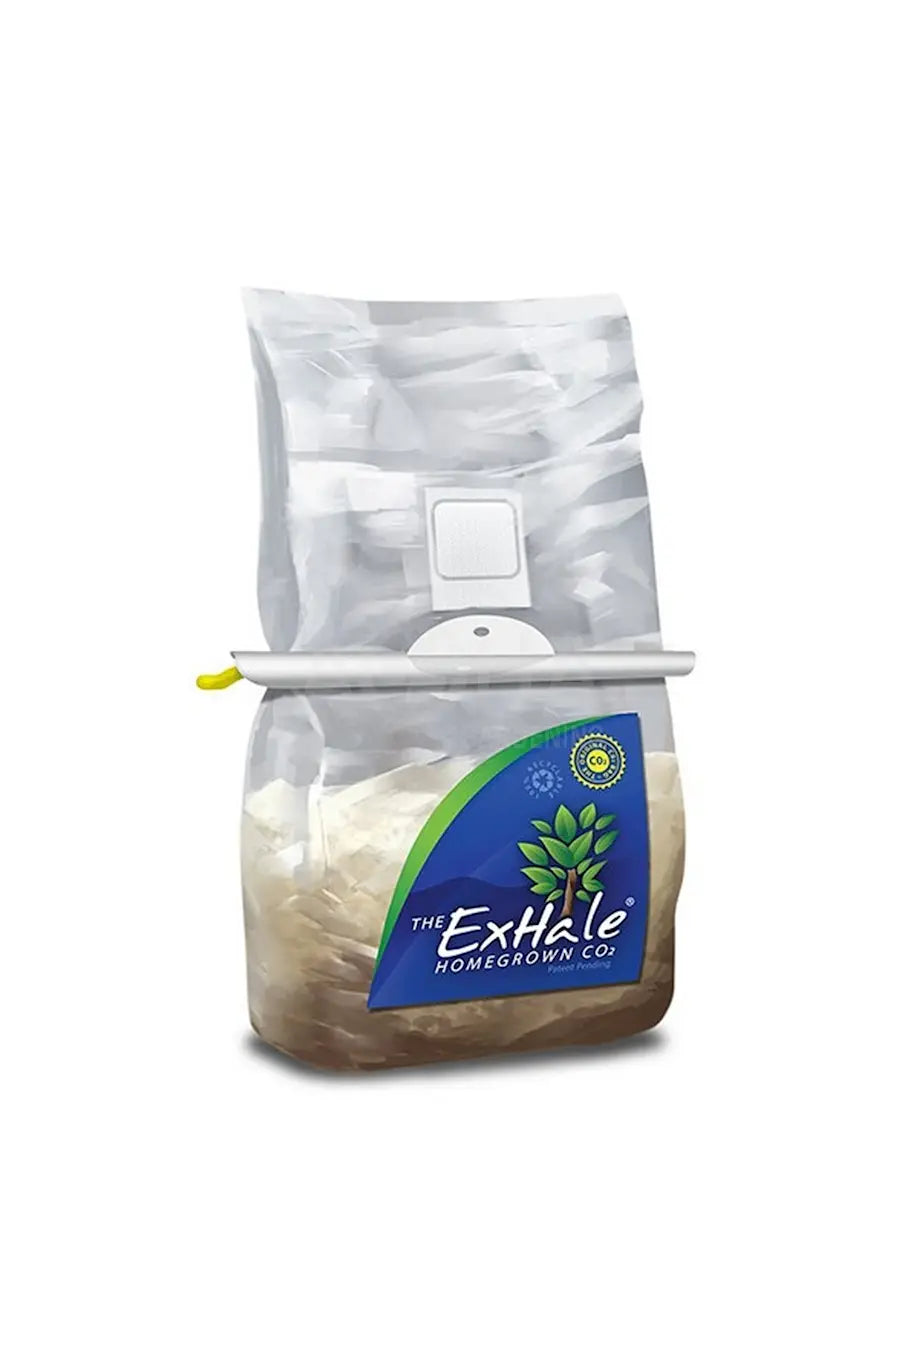 Exhale Co2 Bag - Legana Plants Plus